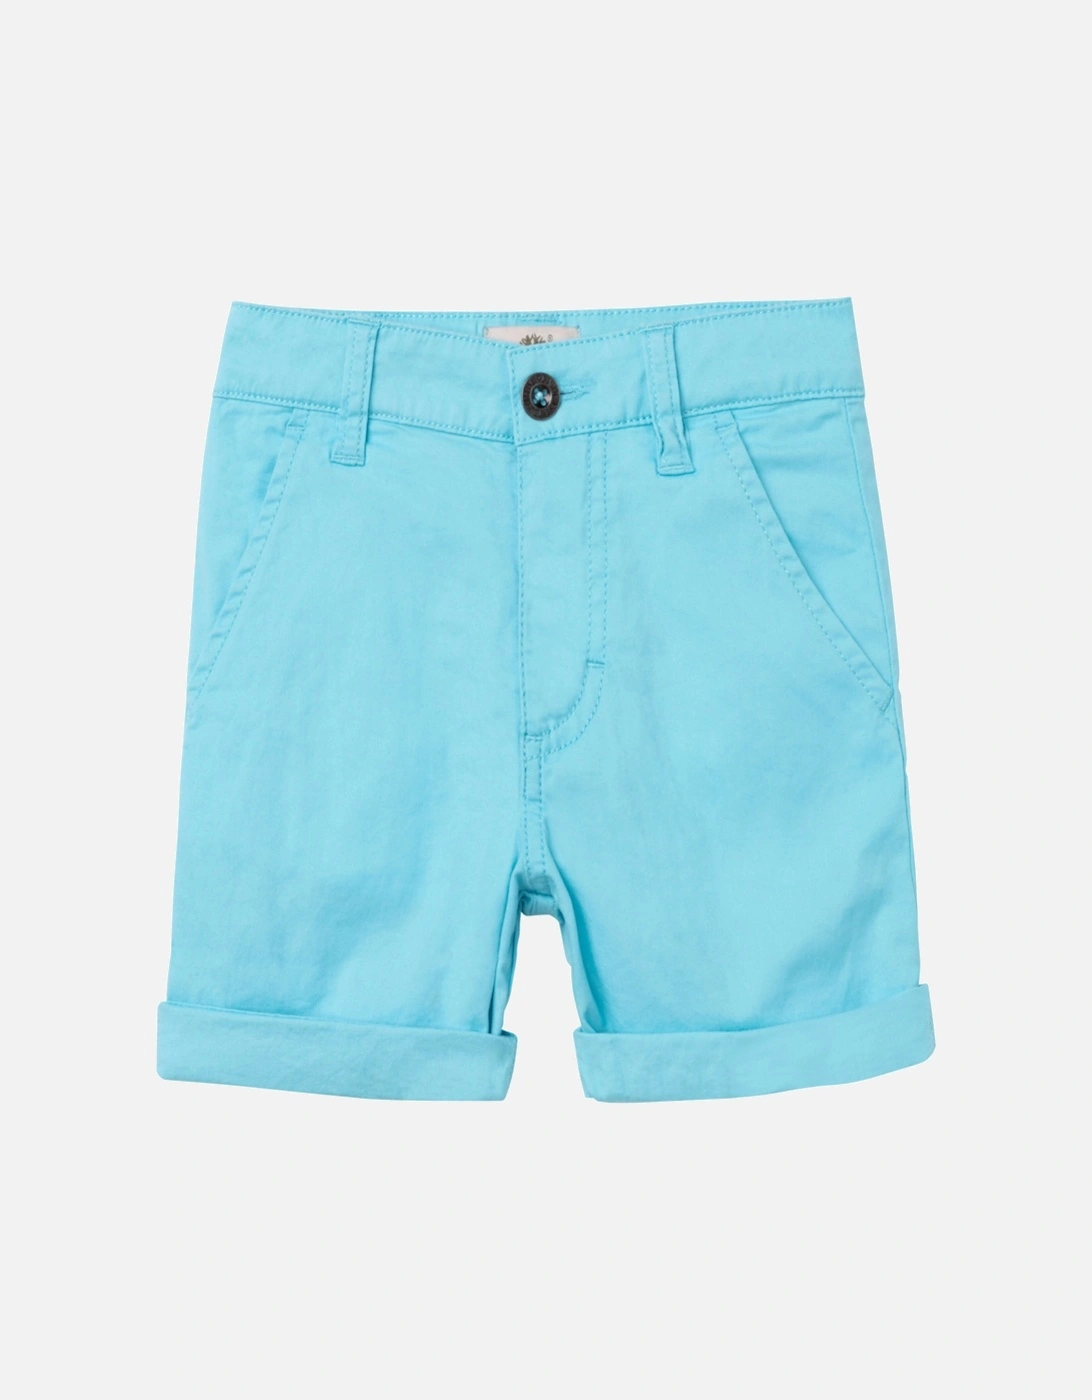 Aqua Shorts, 5 of 4